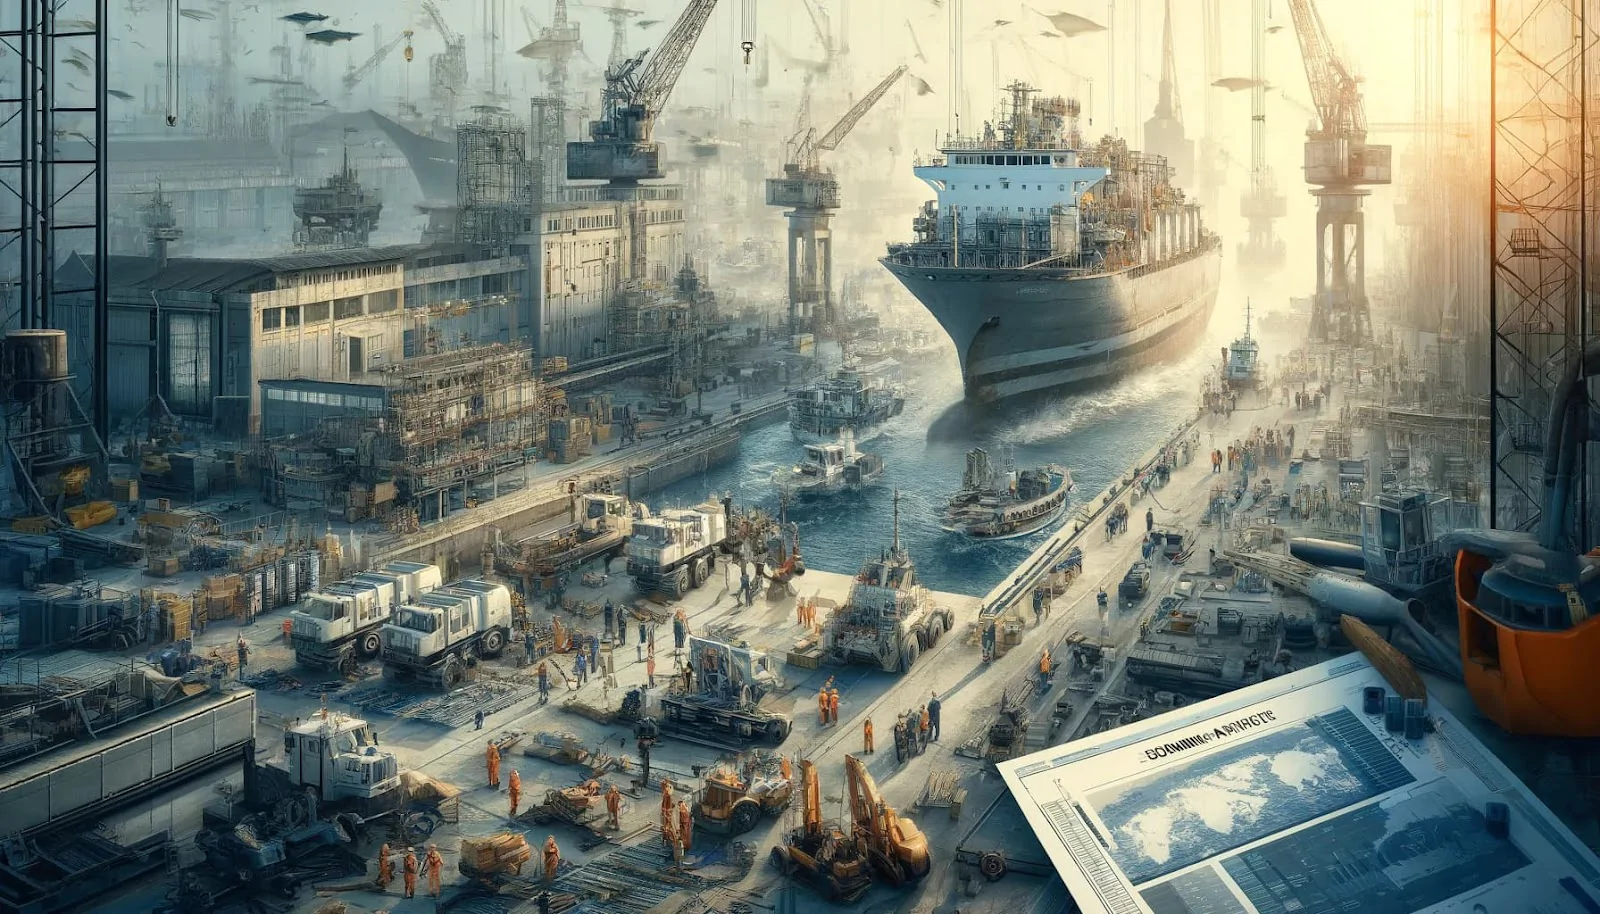 Przyszłość jest tutaj: jak przemysł żeglugowy rewolucjonizuje gospodarkę światową